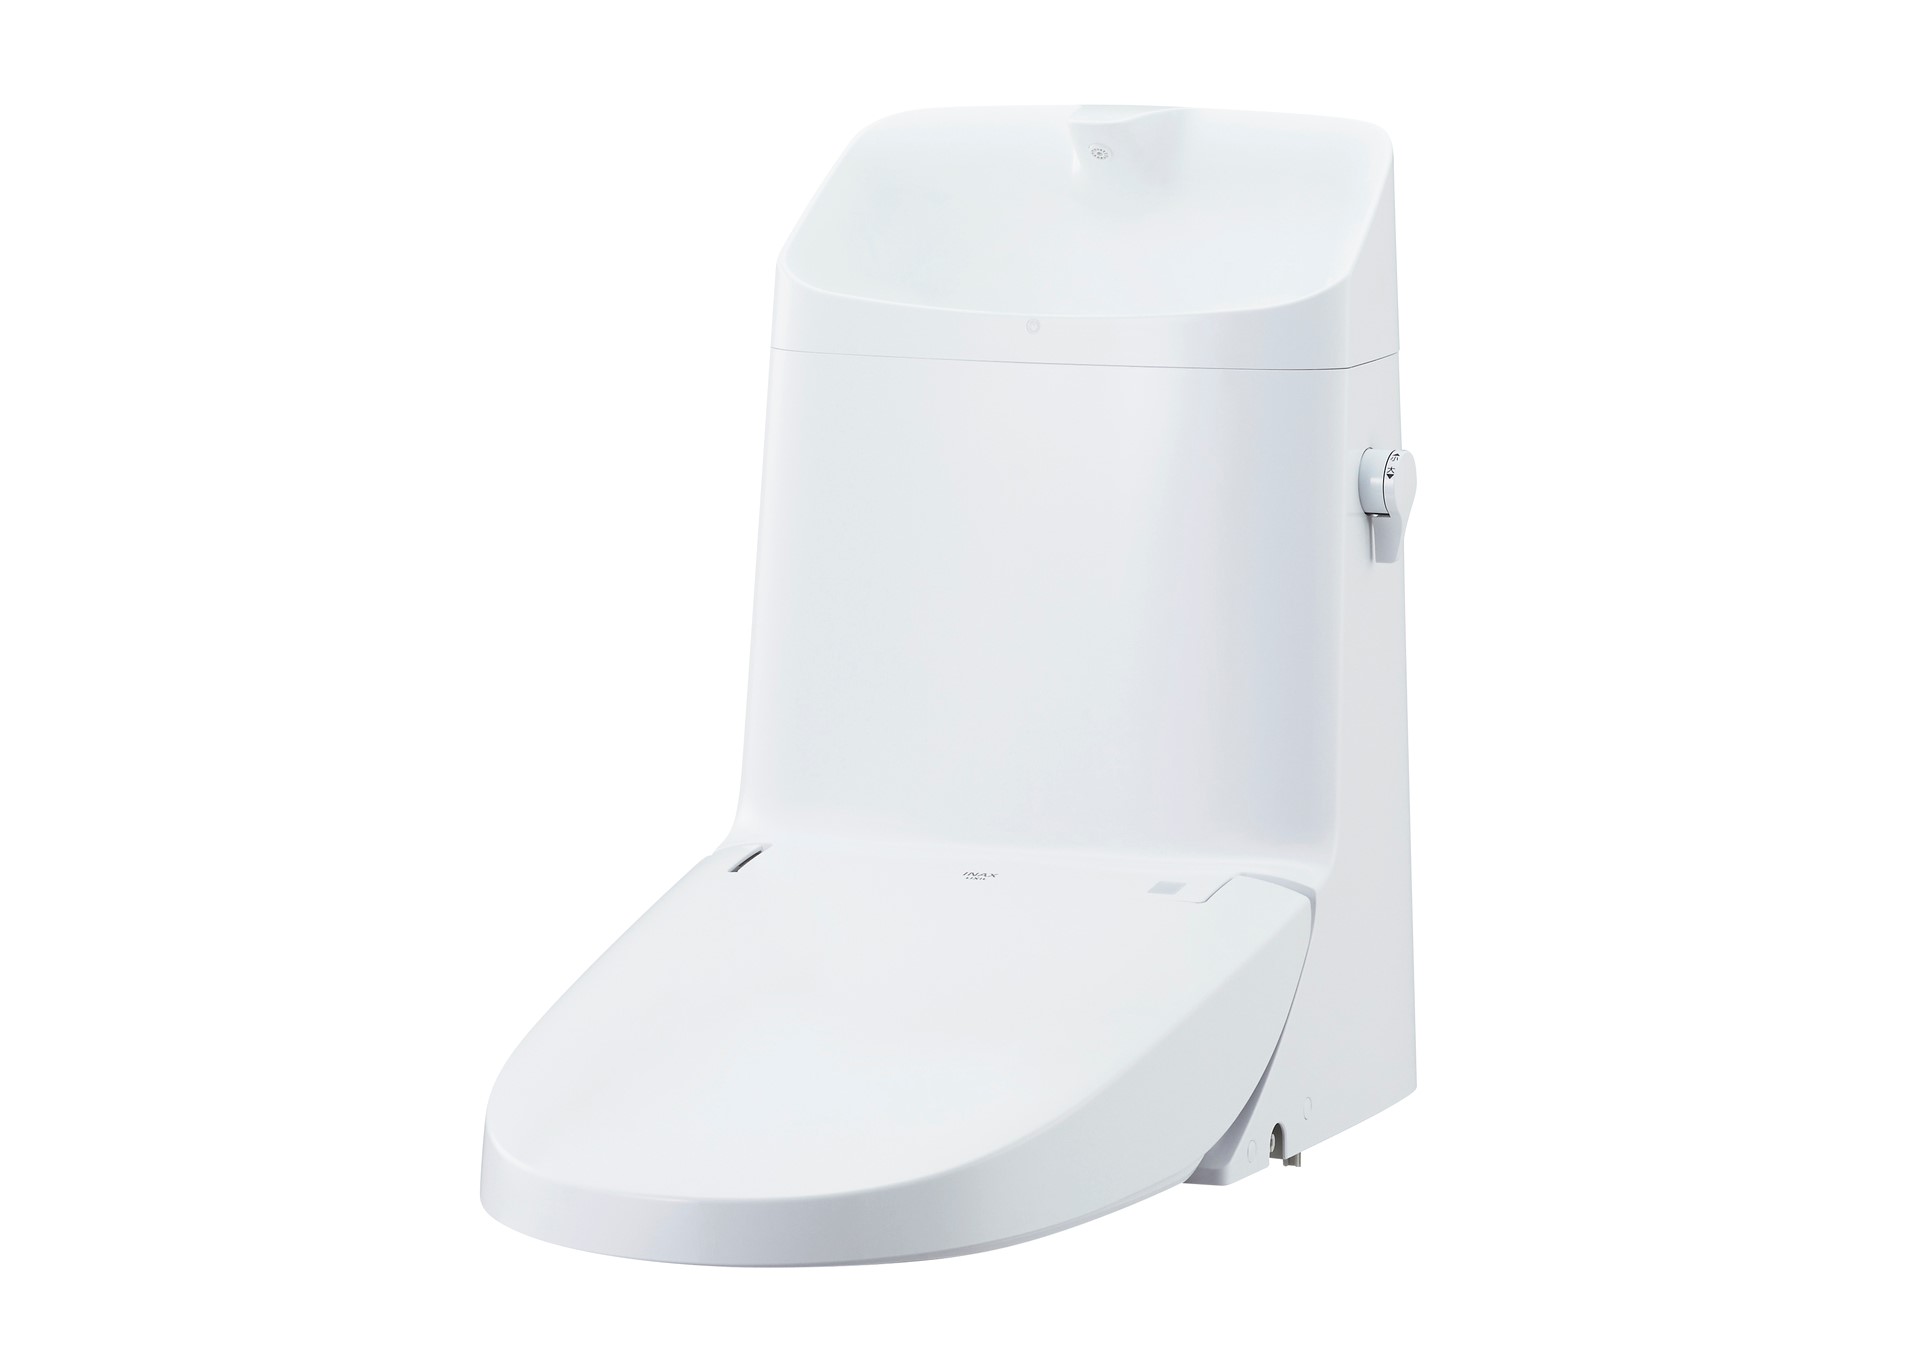 便器一体型シャワートイレにおいて、便器部は残したままシャワートイレ部だけの交換が可能な「リフレッシュシャワートイレ」新発売 サムネイル画像